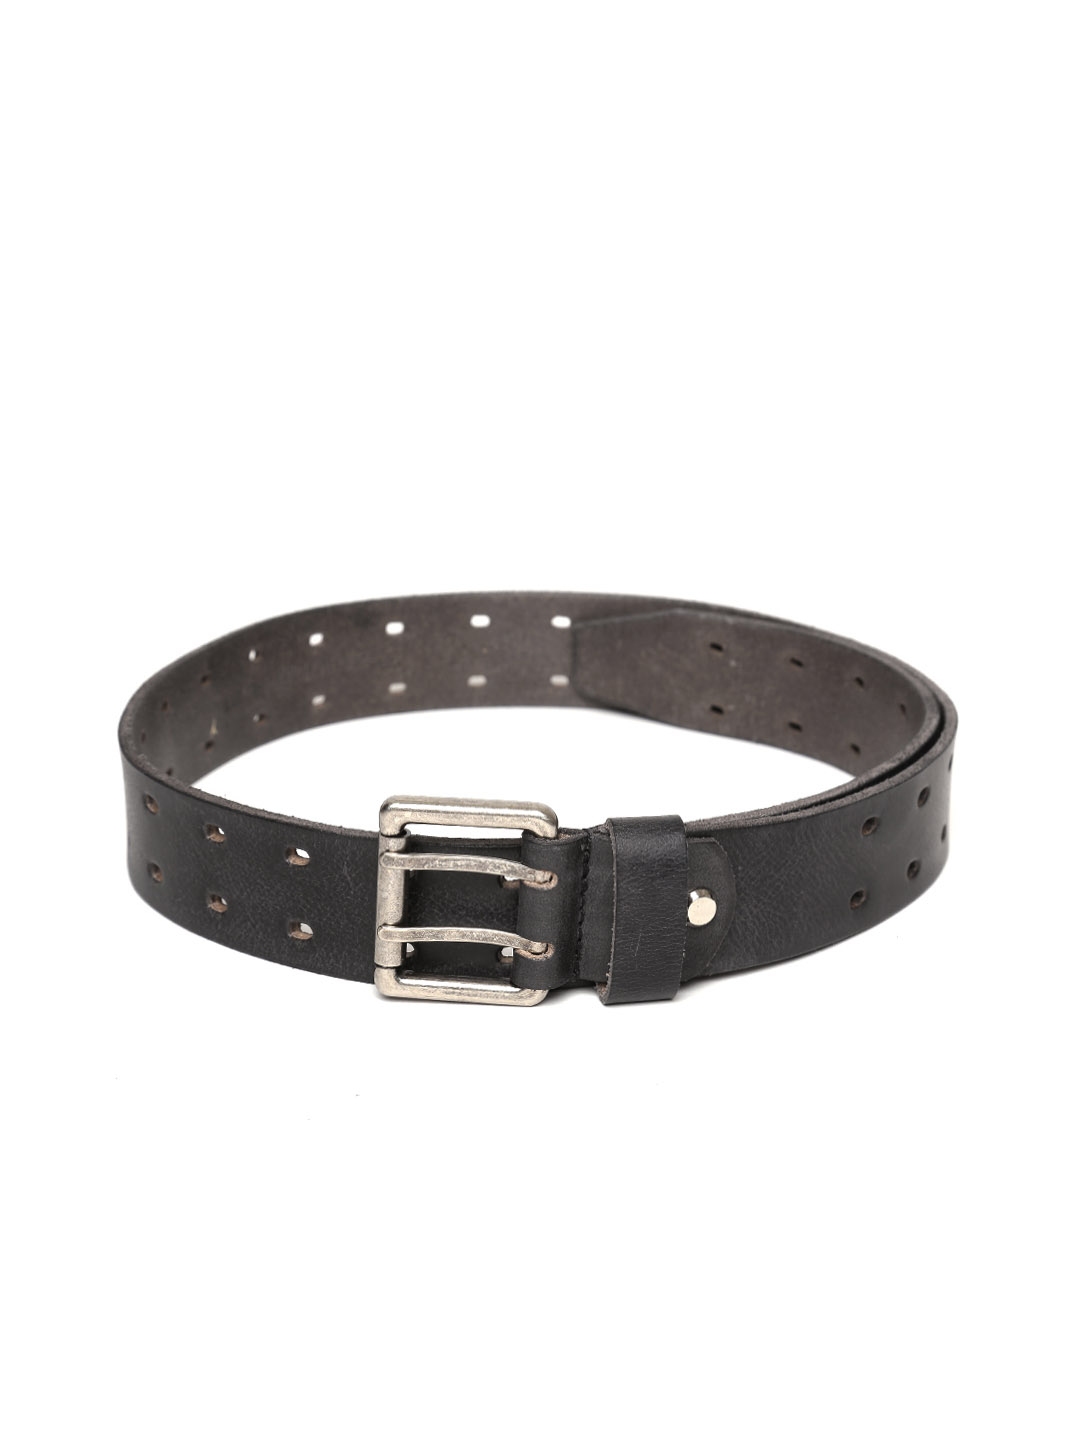 Buy Roadster Men Black Perforated Leather Belt - Belts for Men 1650522 ...